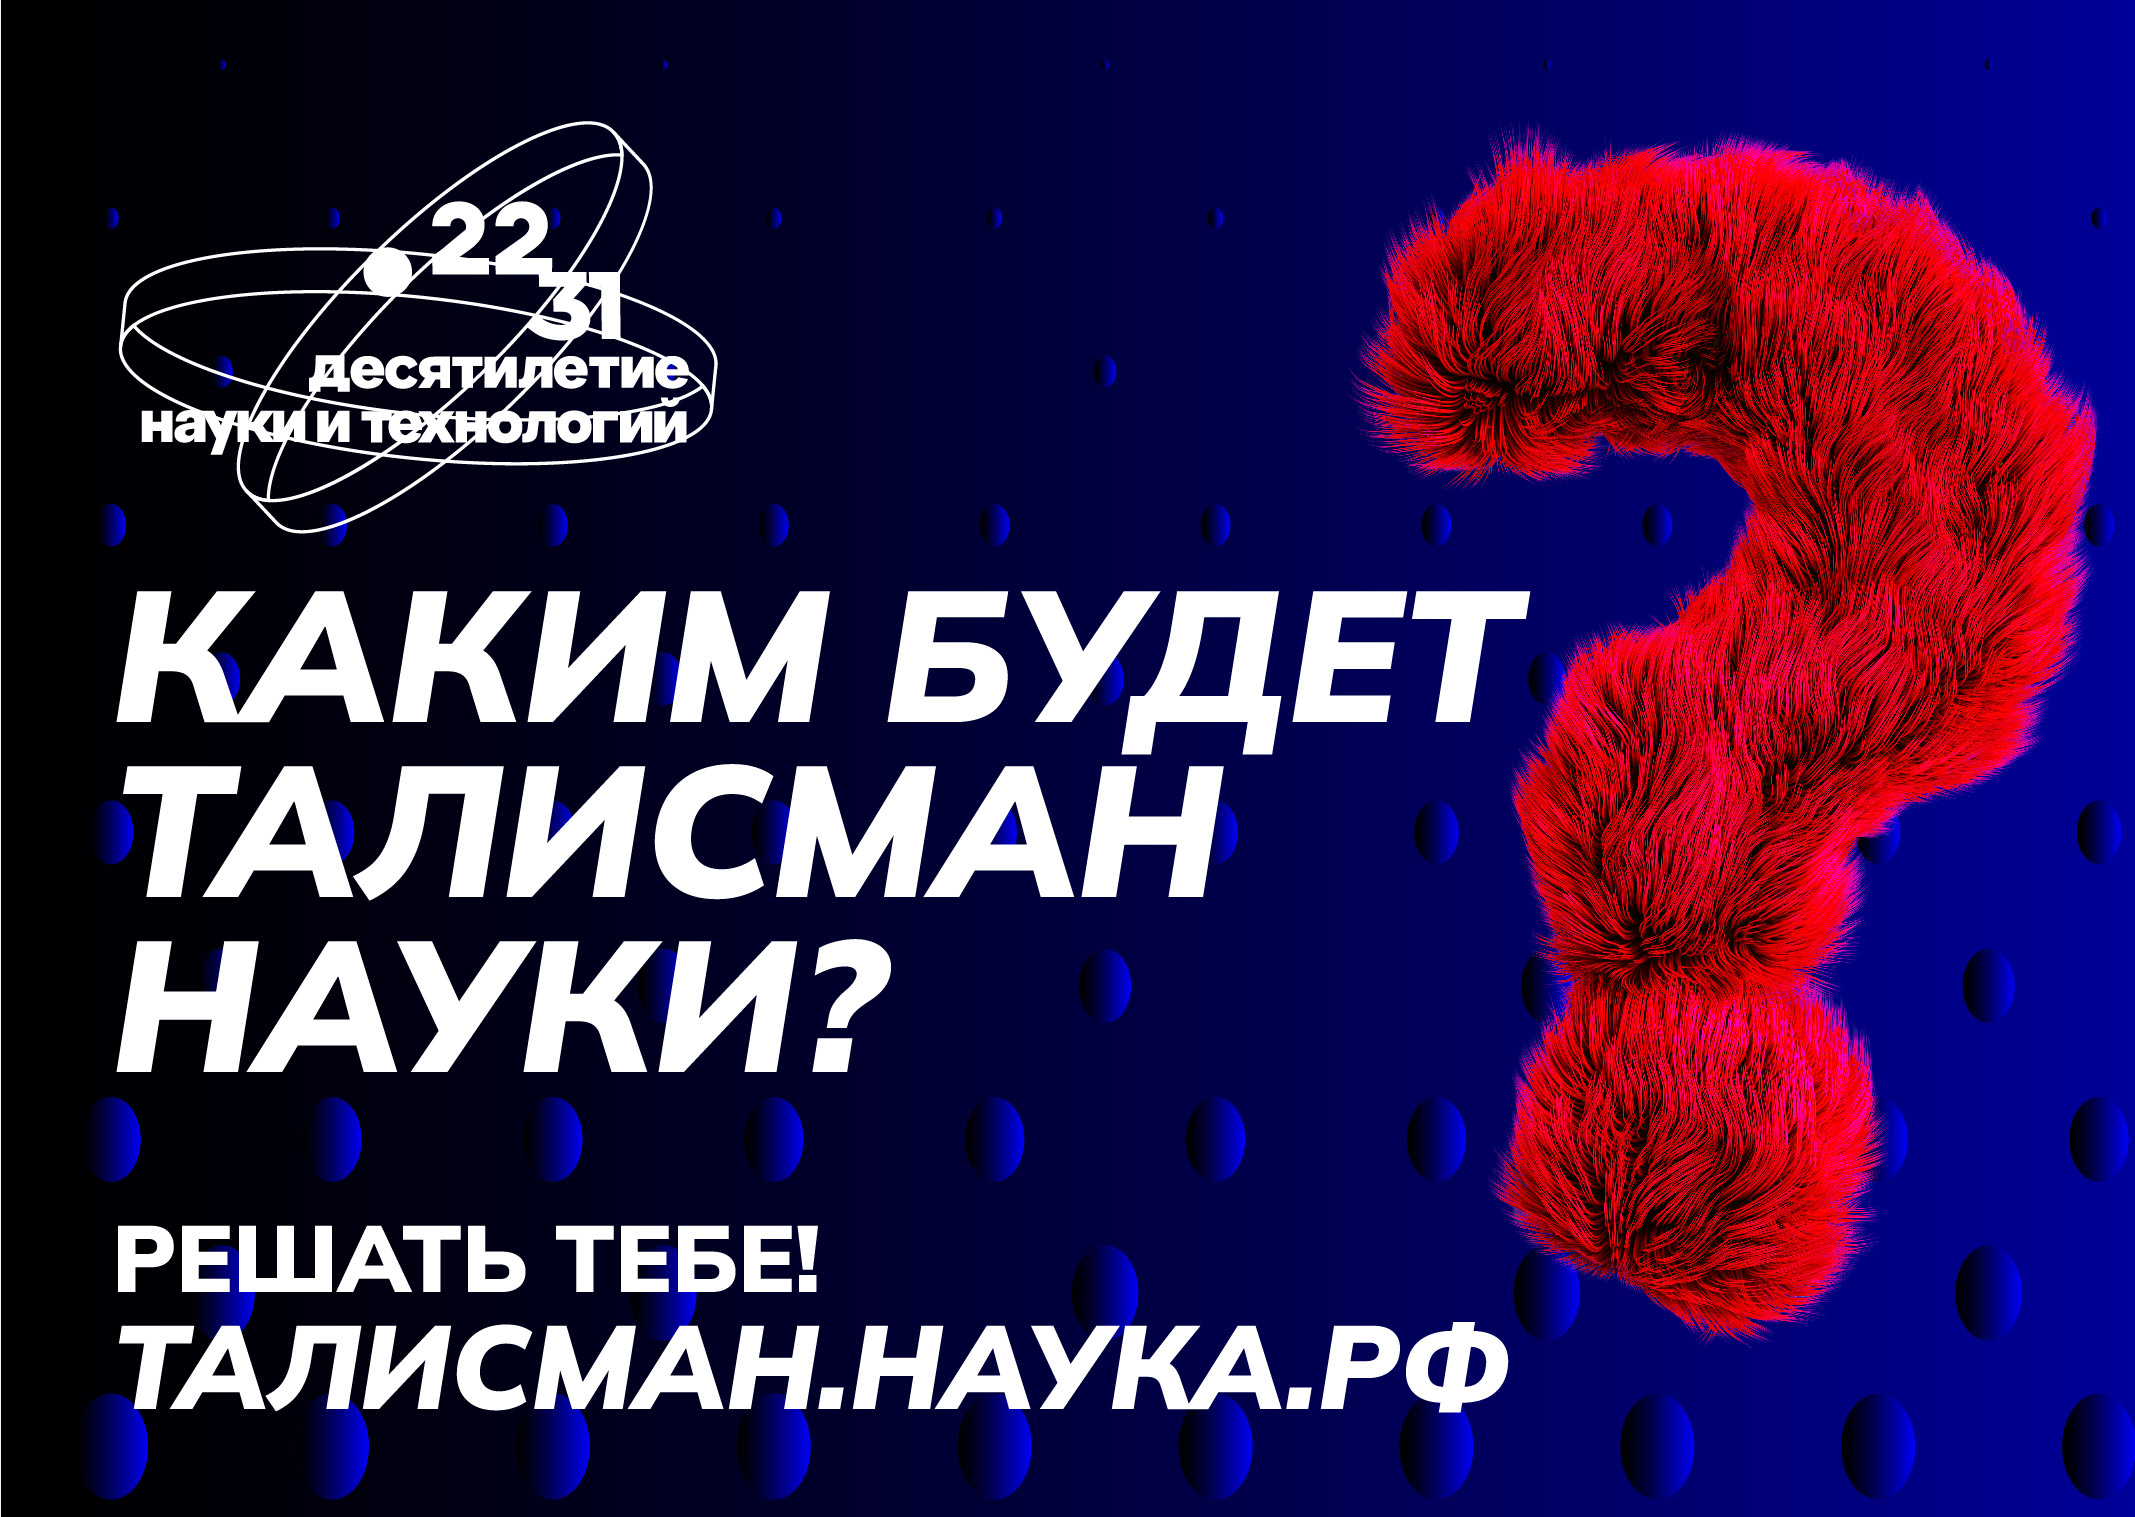 Белгородцы могут предложить свой вариант Талисмана Десятилетия науки и технологий.